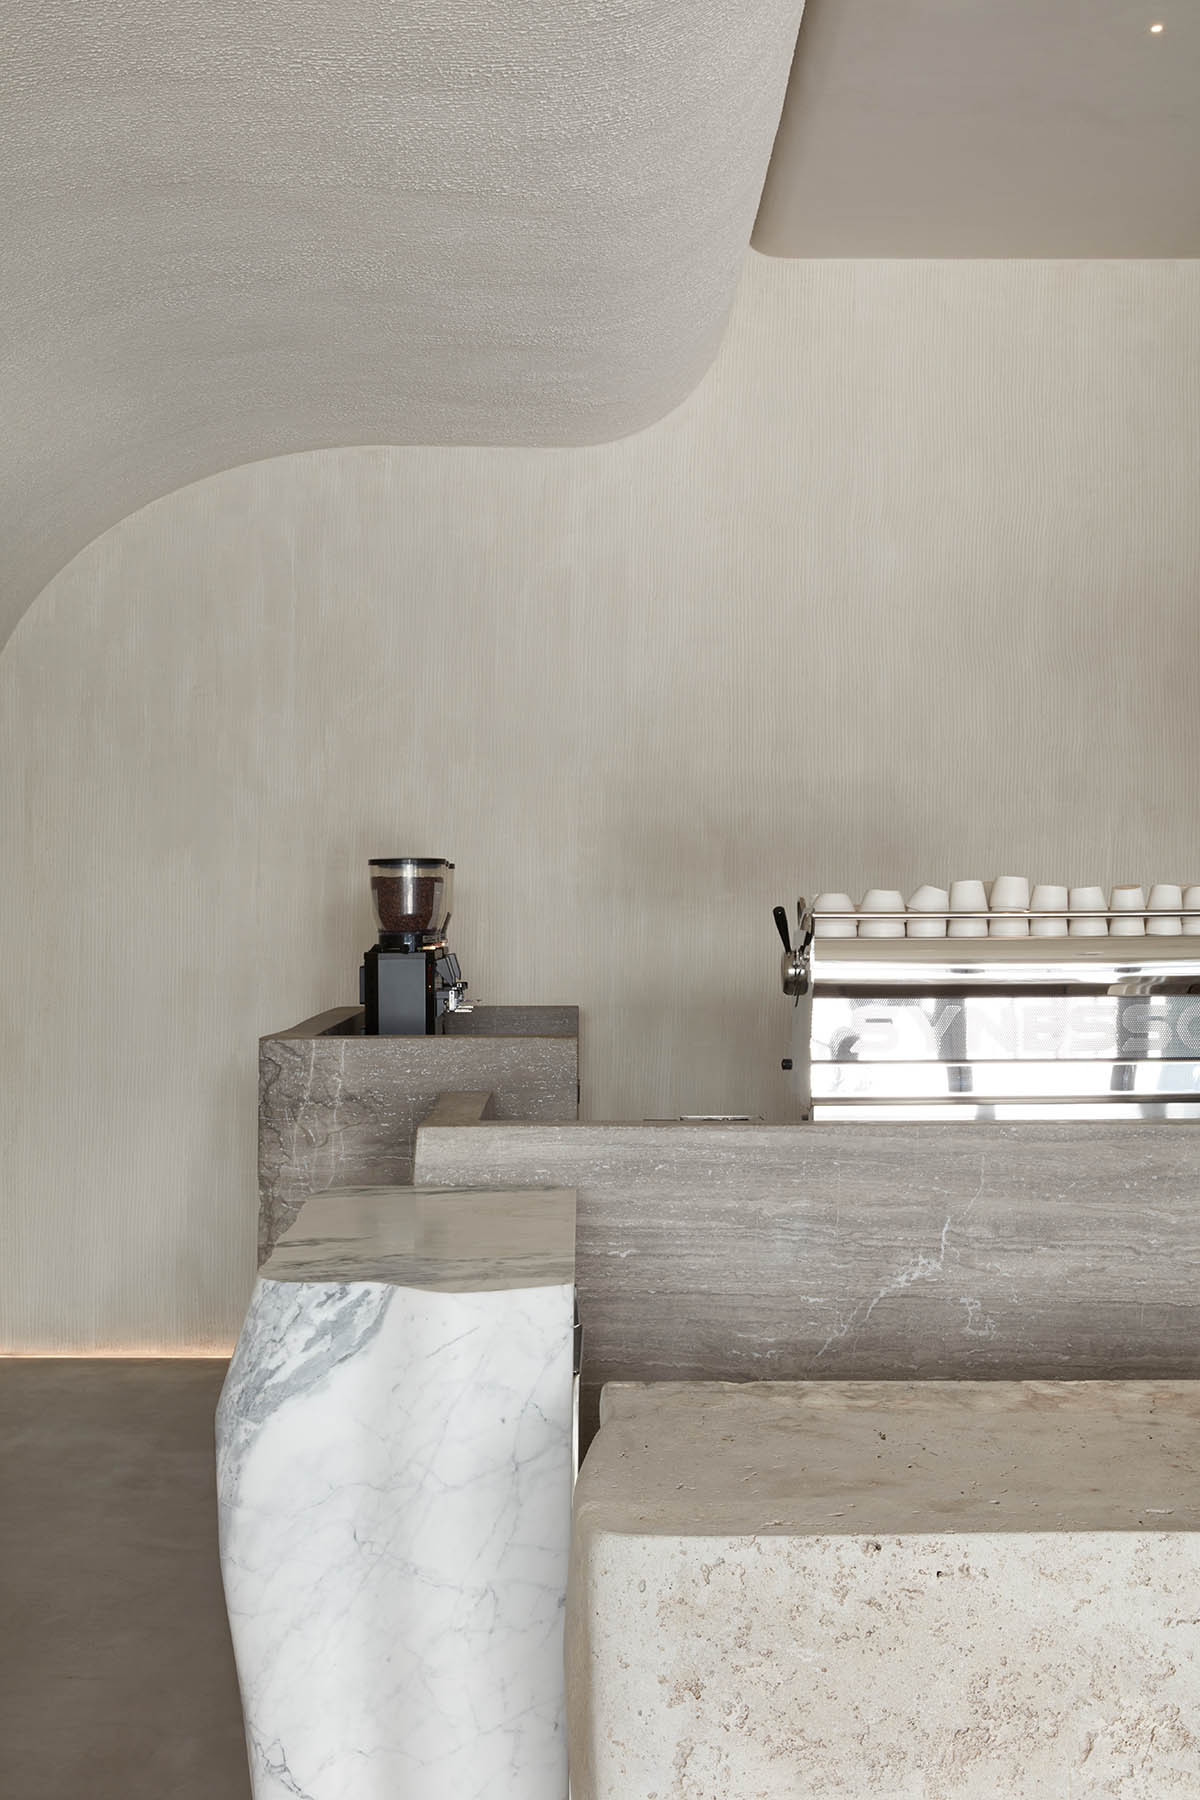 Интерьер кофейни от VSHD с большими каменными блоками неправильной формы и изогнутым потолком в Дубае.